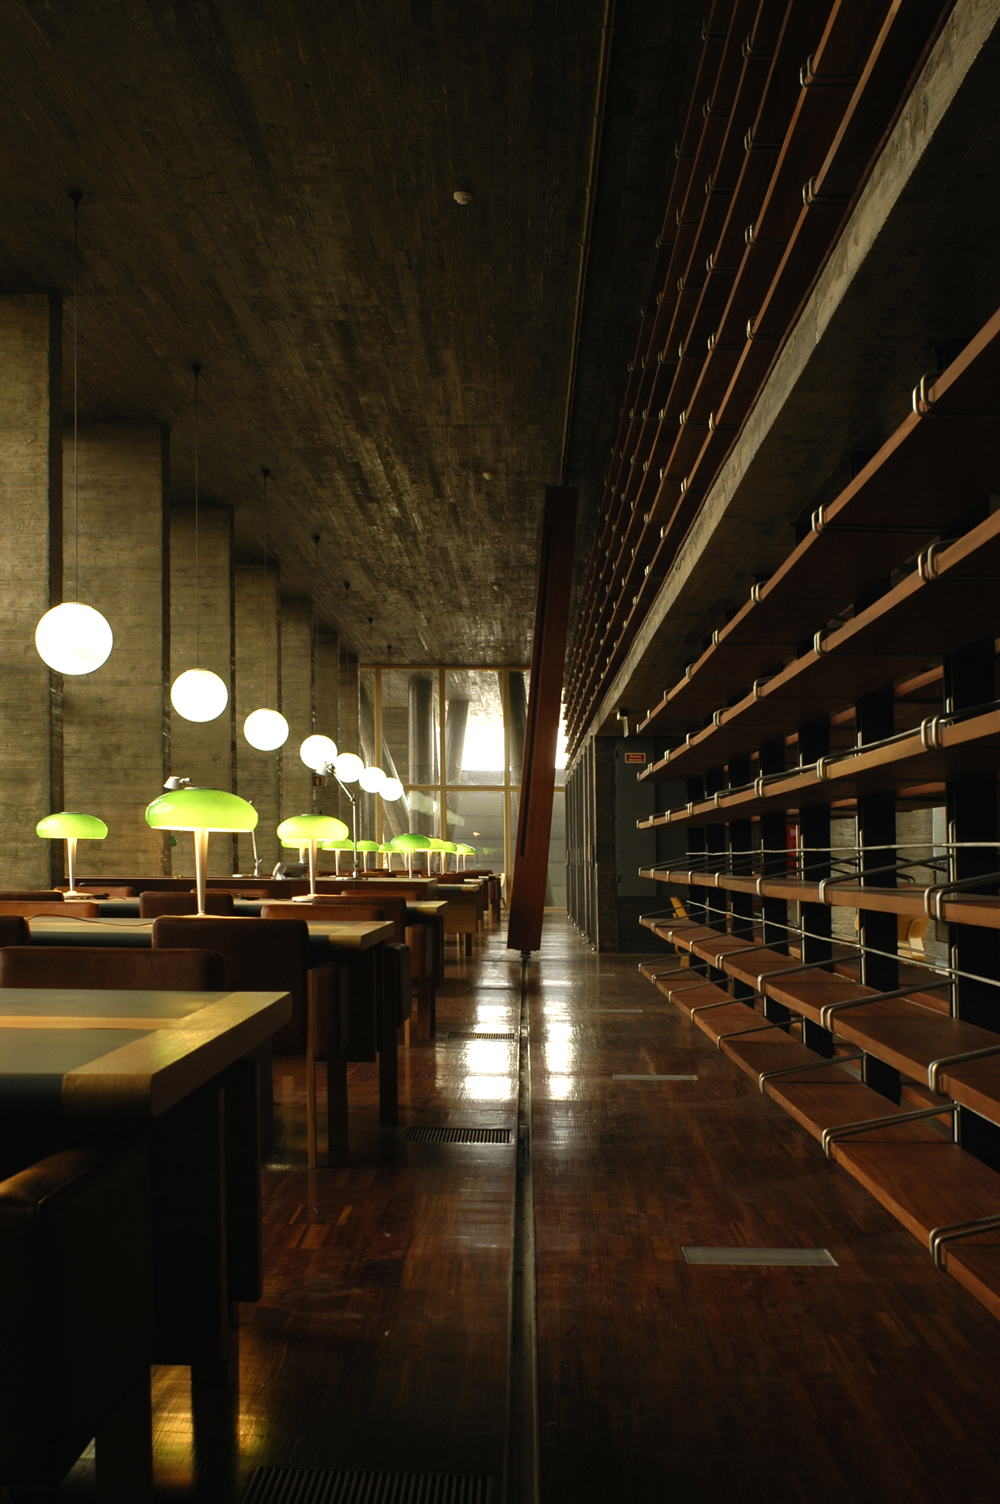 Imagem 5 - Biblioteca Central da Universidade dos Açores